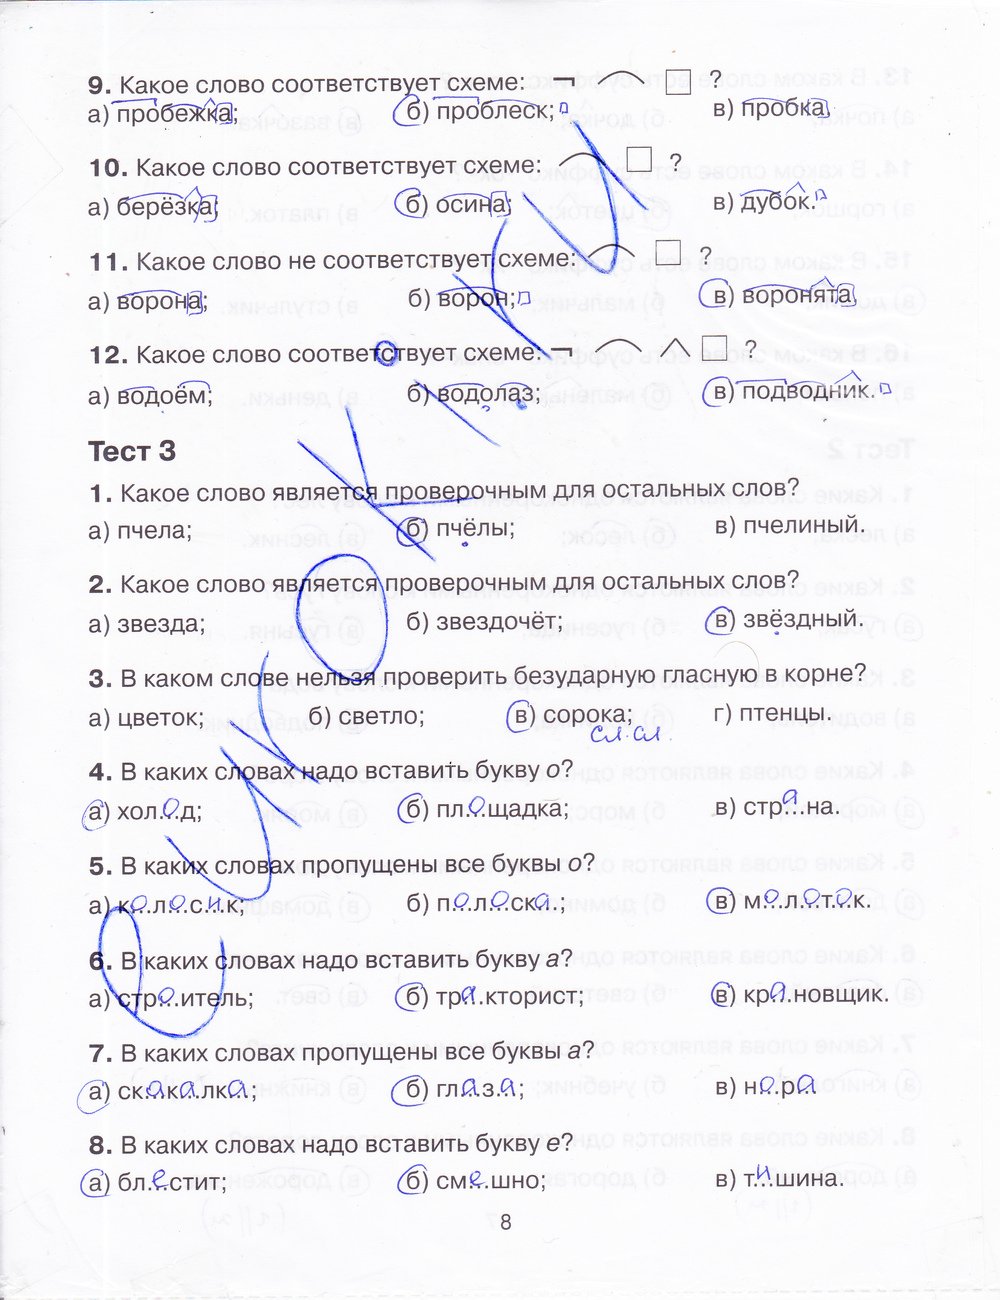 Тренажер русский язык 4 класс шклярова ответы. Тренажёр по русскому языку 4 класс ответы.